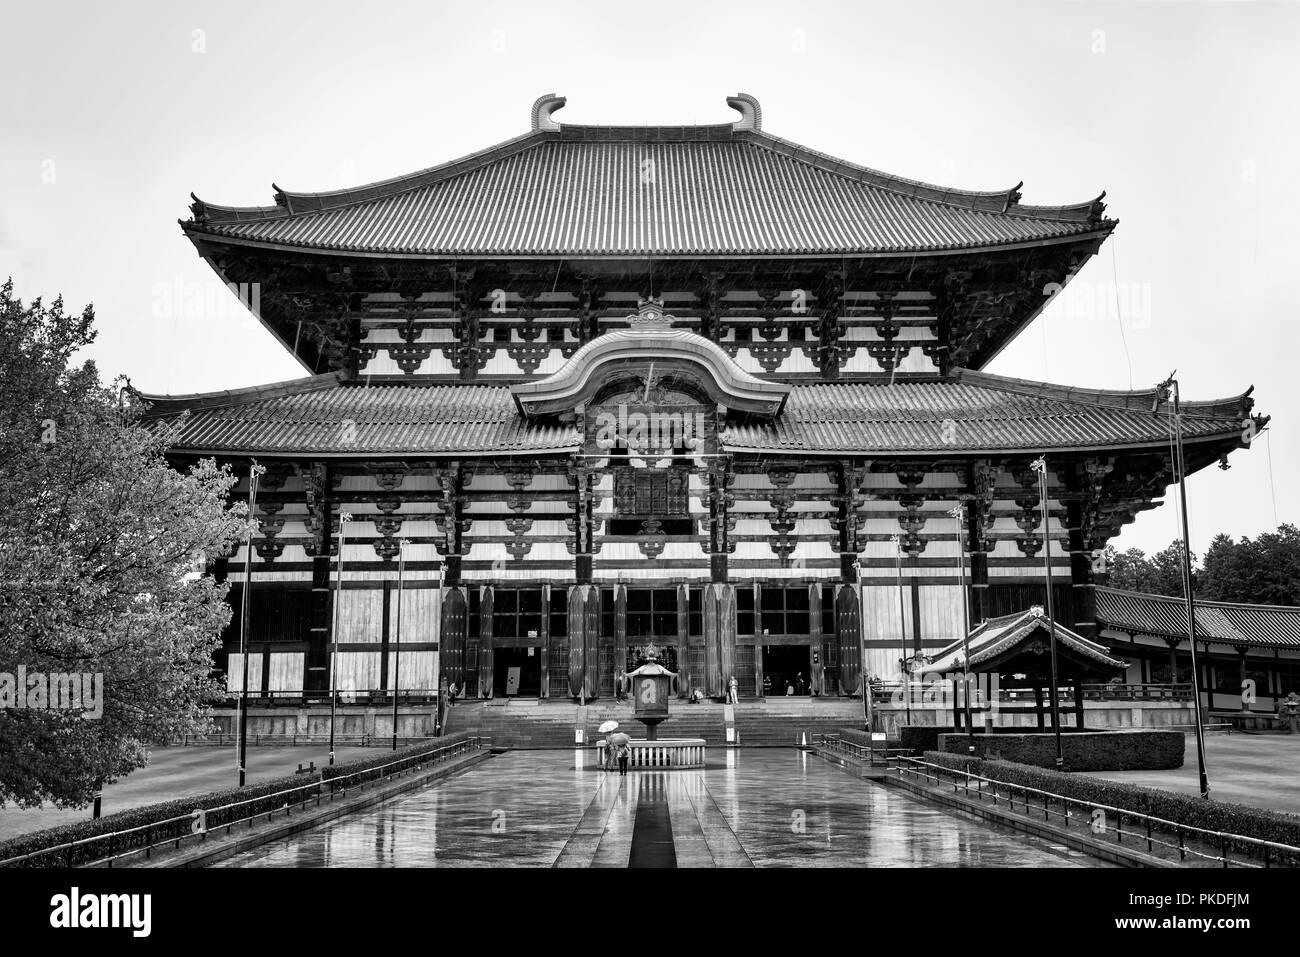 Nara, Japon - 29 Avril 2014 : le Temple Todai ji Temple bouddhiste, qui était autrefois l'un des puissants sept grands temples de Nara Banque D'Images